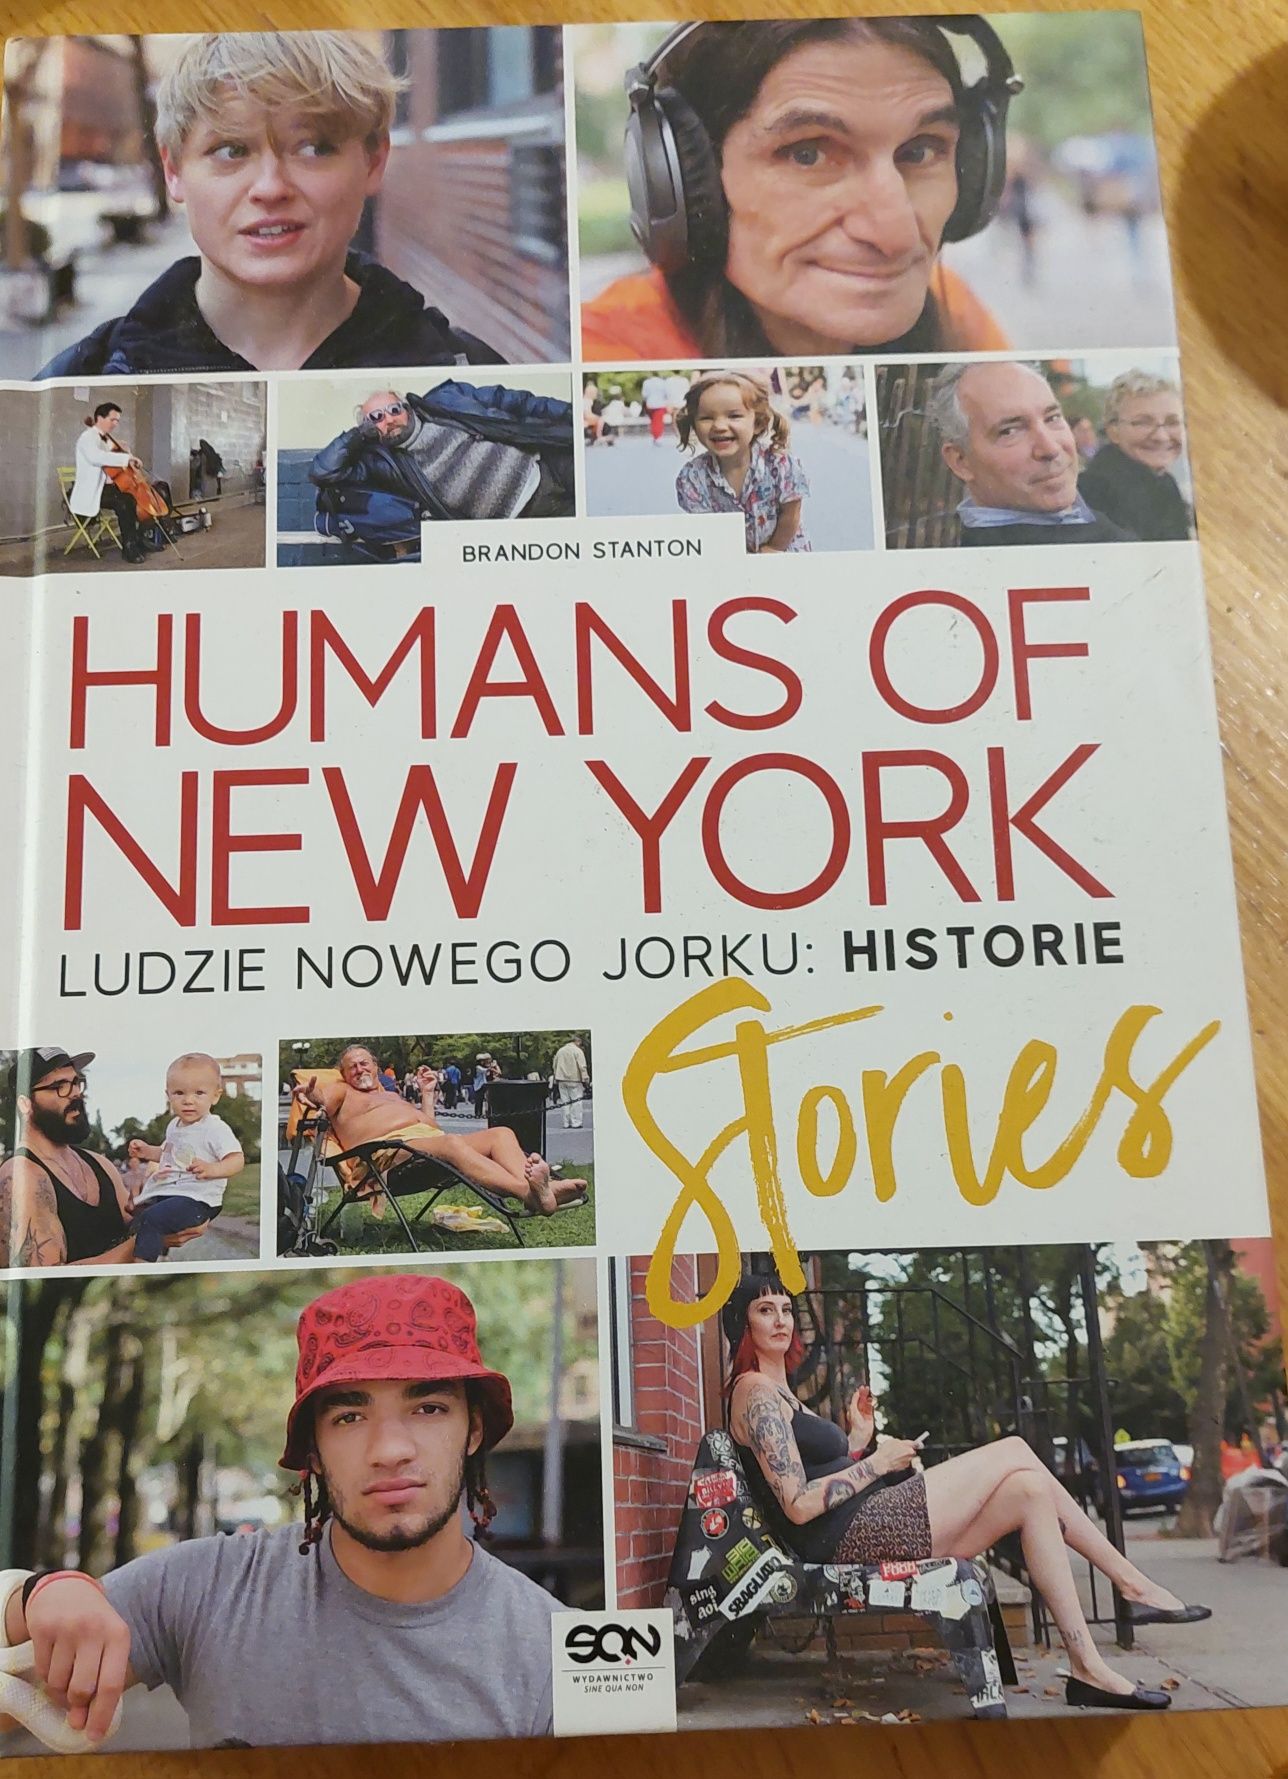 Ludzie Nowego Yorku: Historie